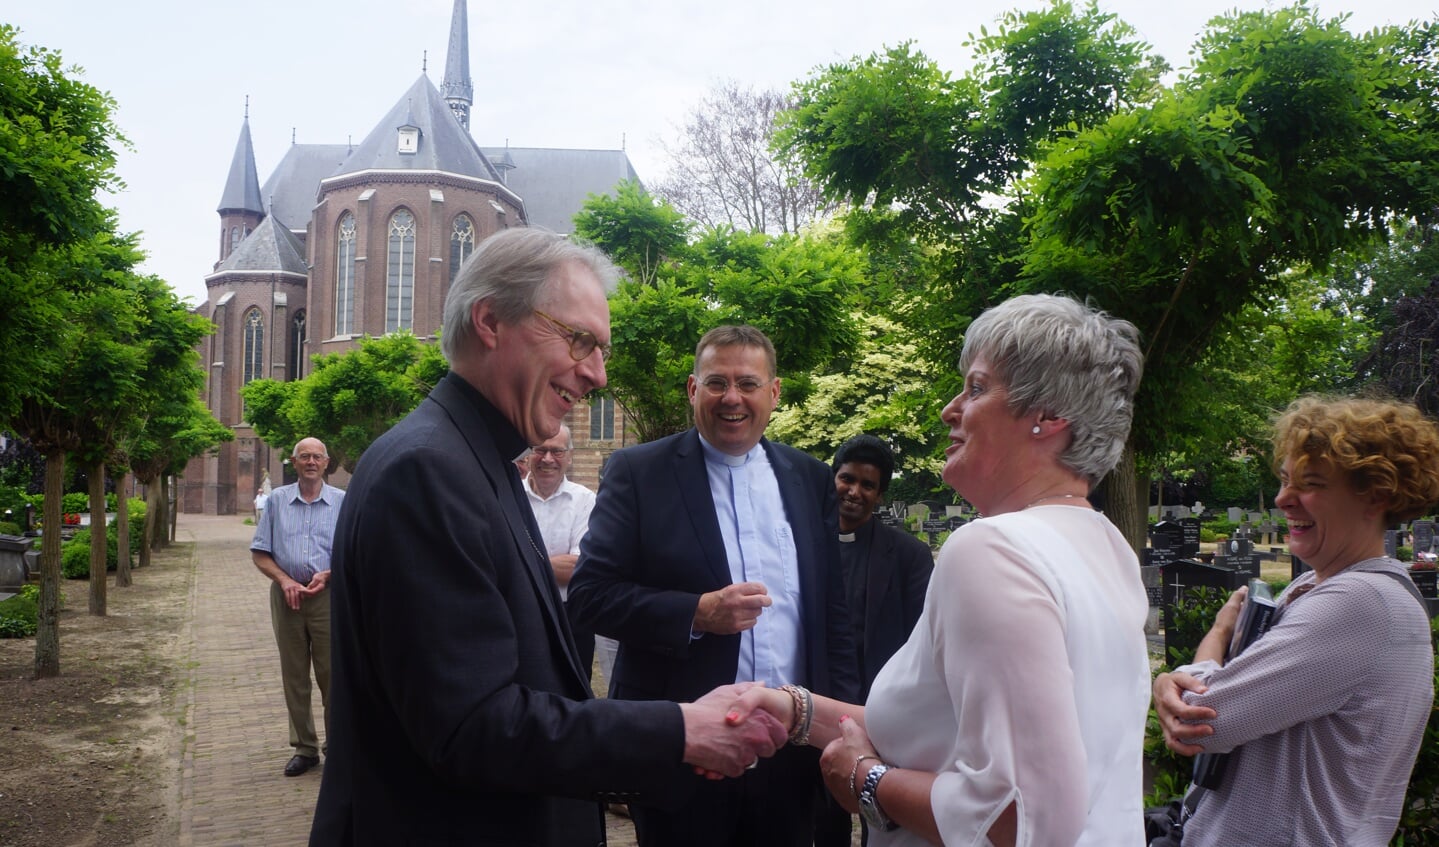 Bisschop de Korte werd warm welkom geheten door Anneke Maas en Janine Heisterkamp.